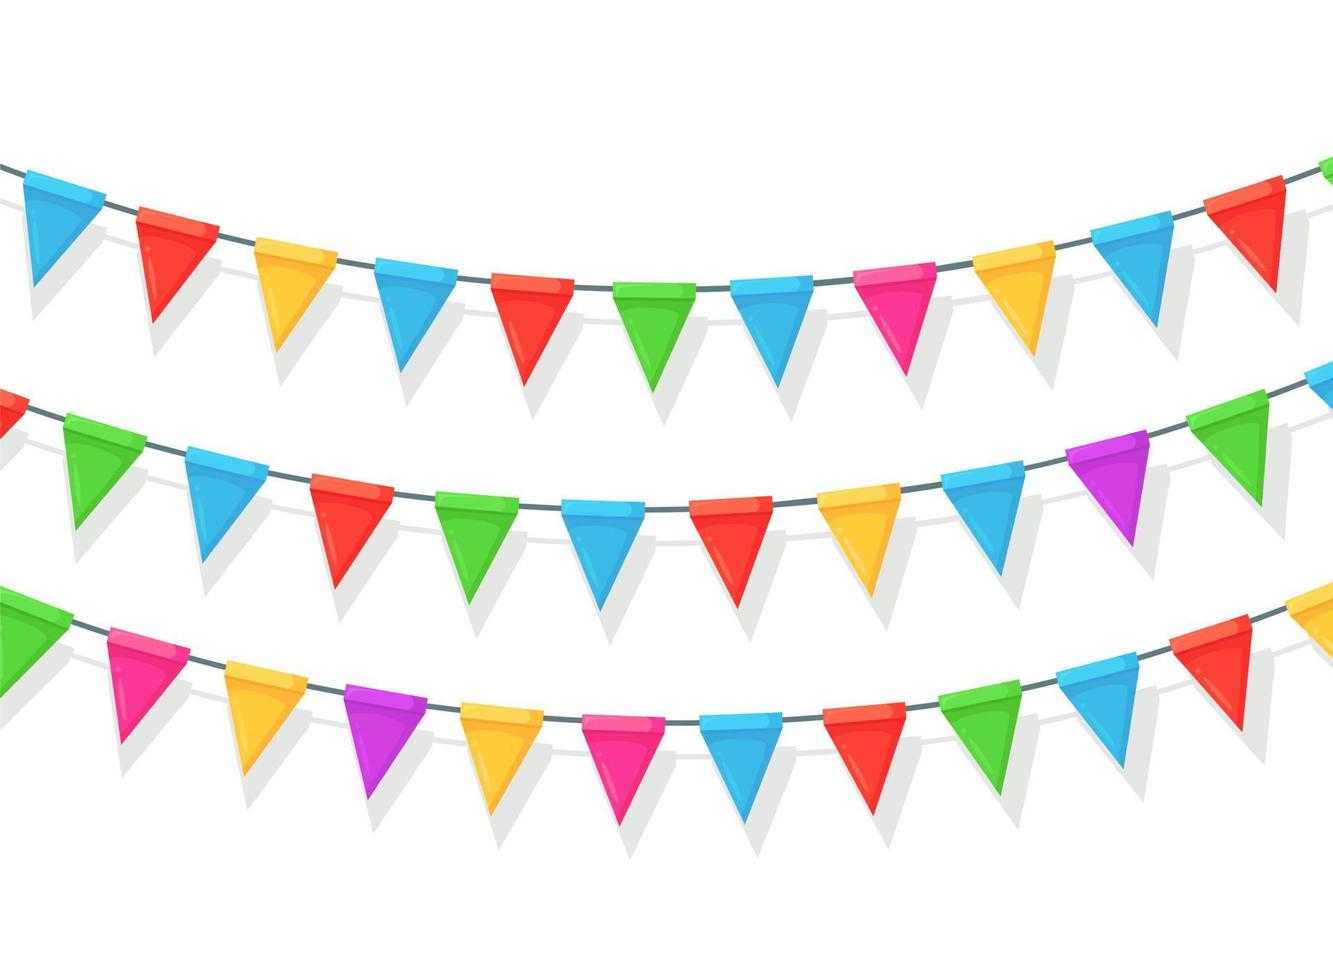 Banner mit Girlande aus farbigen Festivalfahnen und Bändern, Ammer isoliert auf weißem Hintergrund. dekoration, symbole zum feiern von happy birthday party, carnaval, fair. Vektor flaches Design